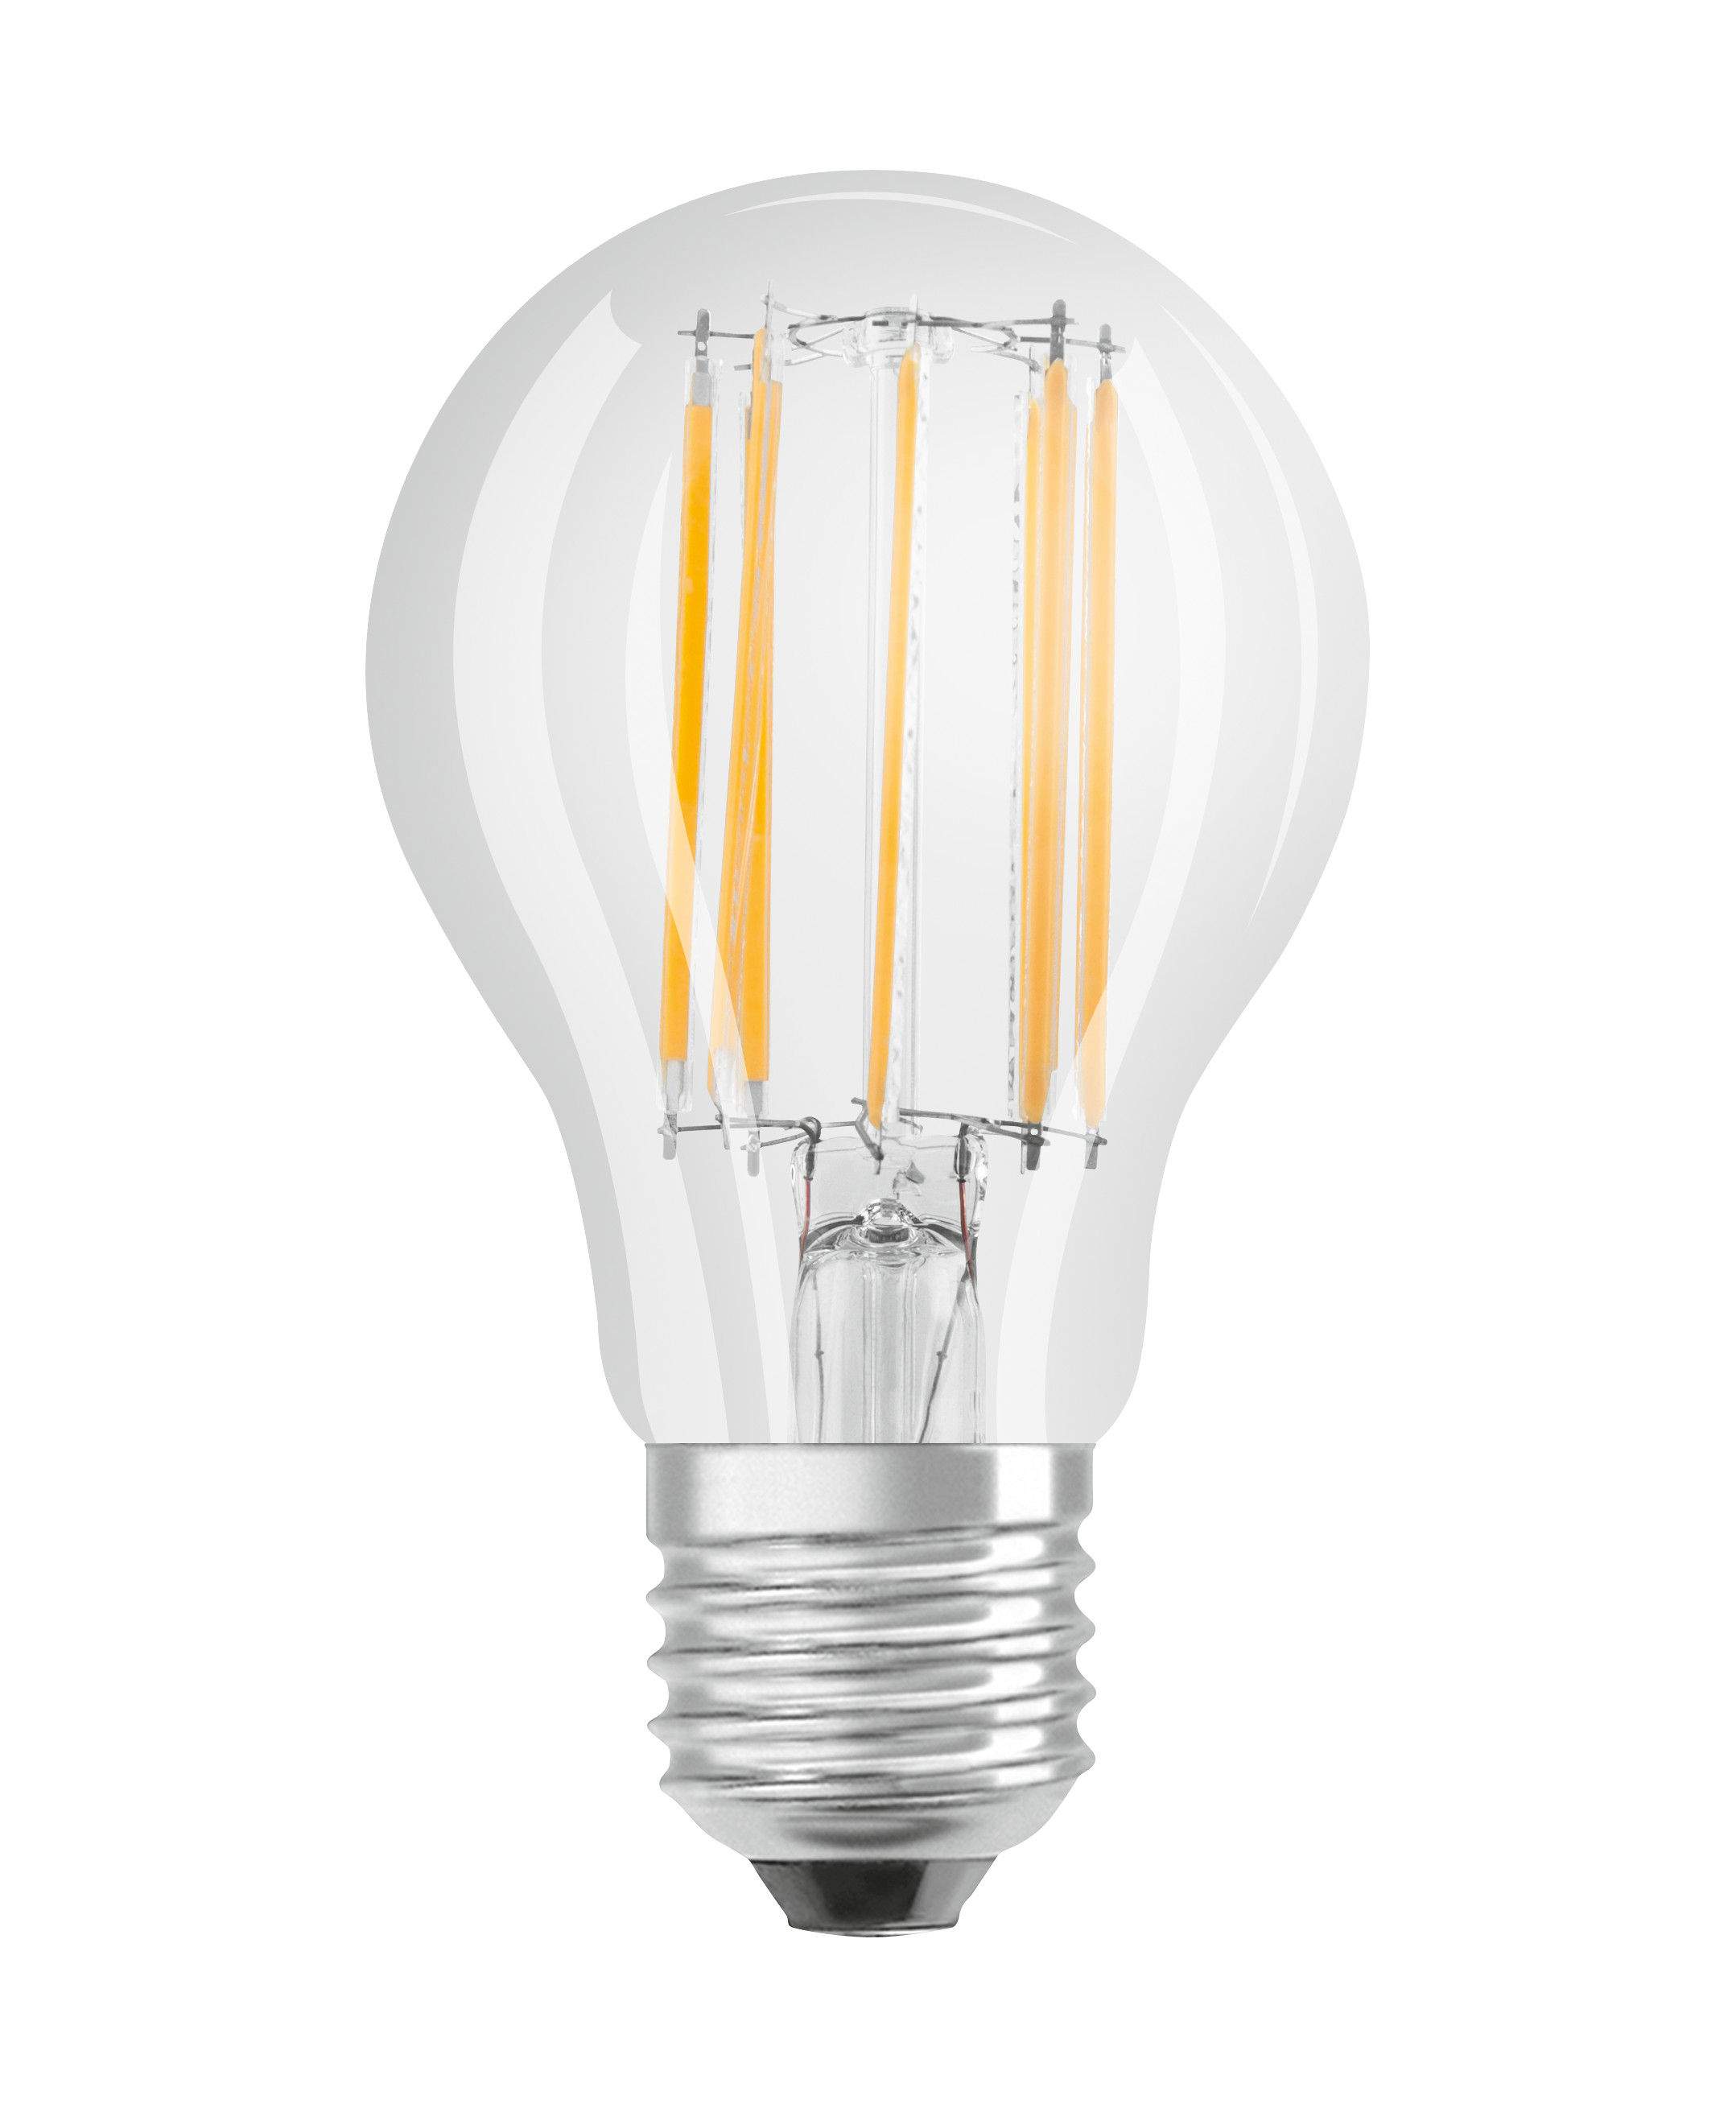 Ampoule LED verre transparent standard E27, 11W, blanc chaud.